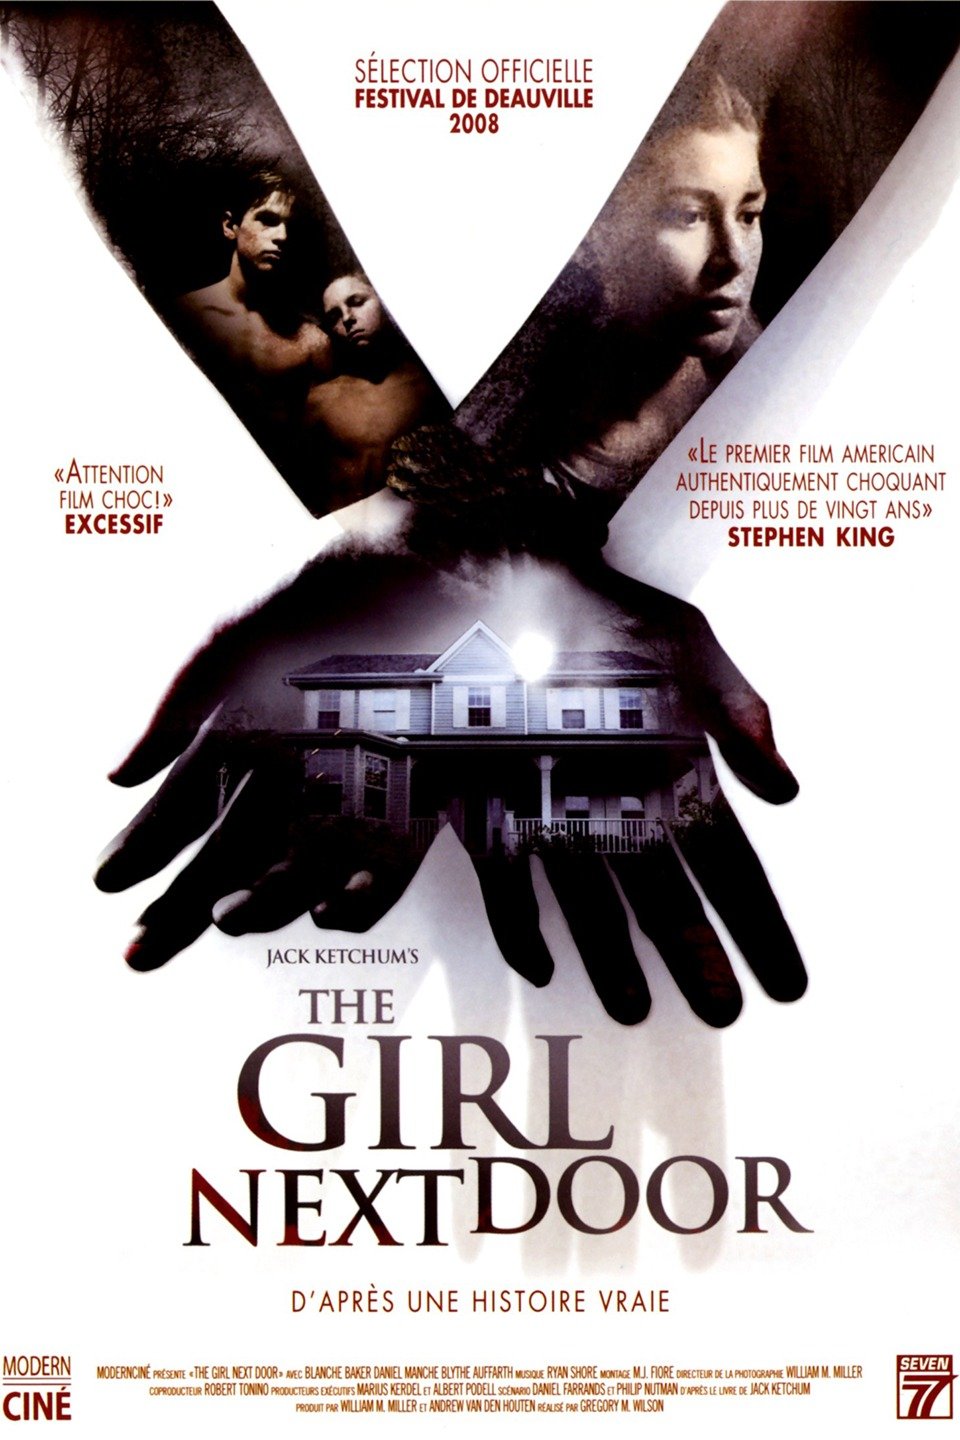 The Girl Next Door (2004 film) - Wikipedia